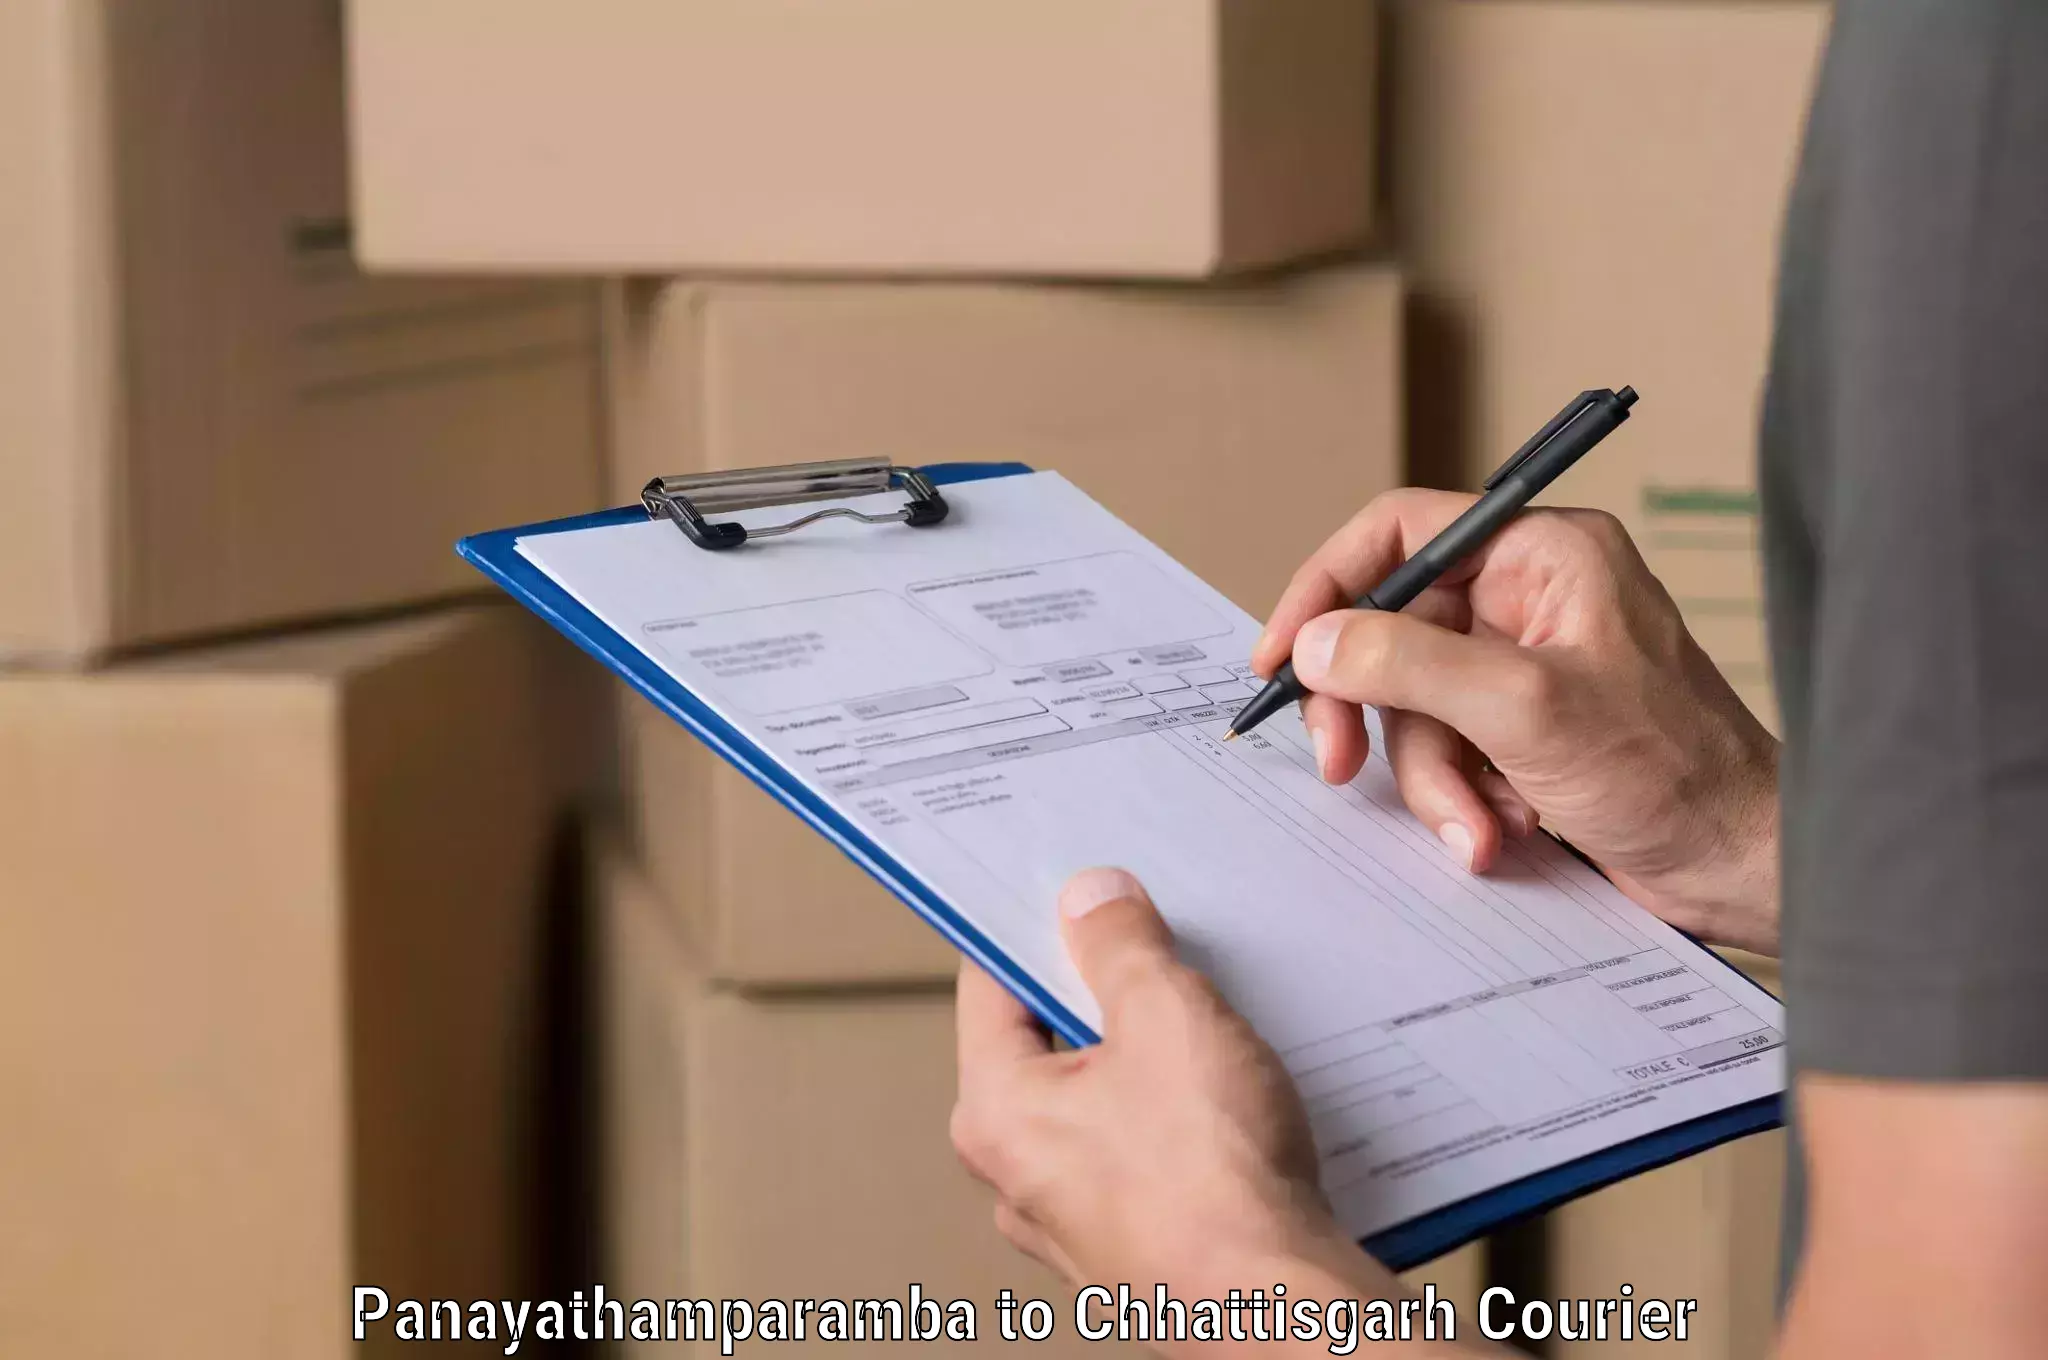 Quick dispatch service Panayathamparamba to Balod